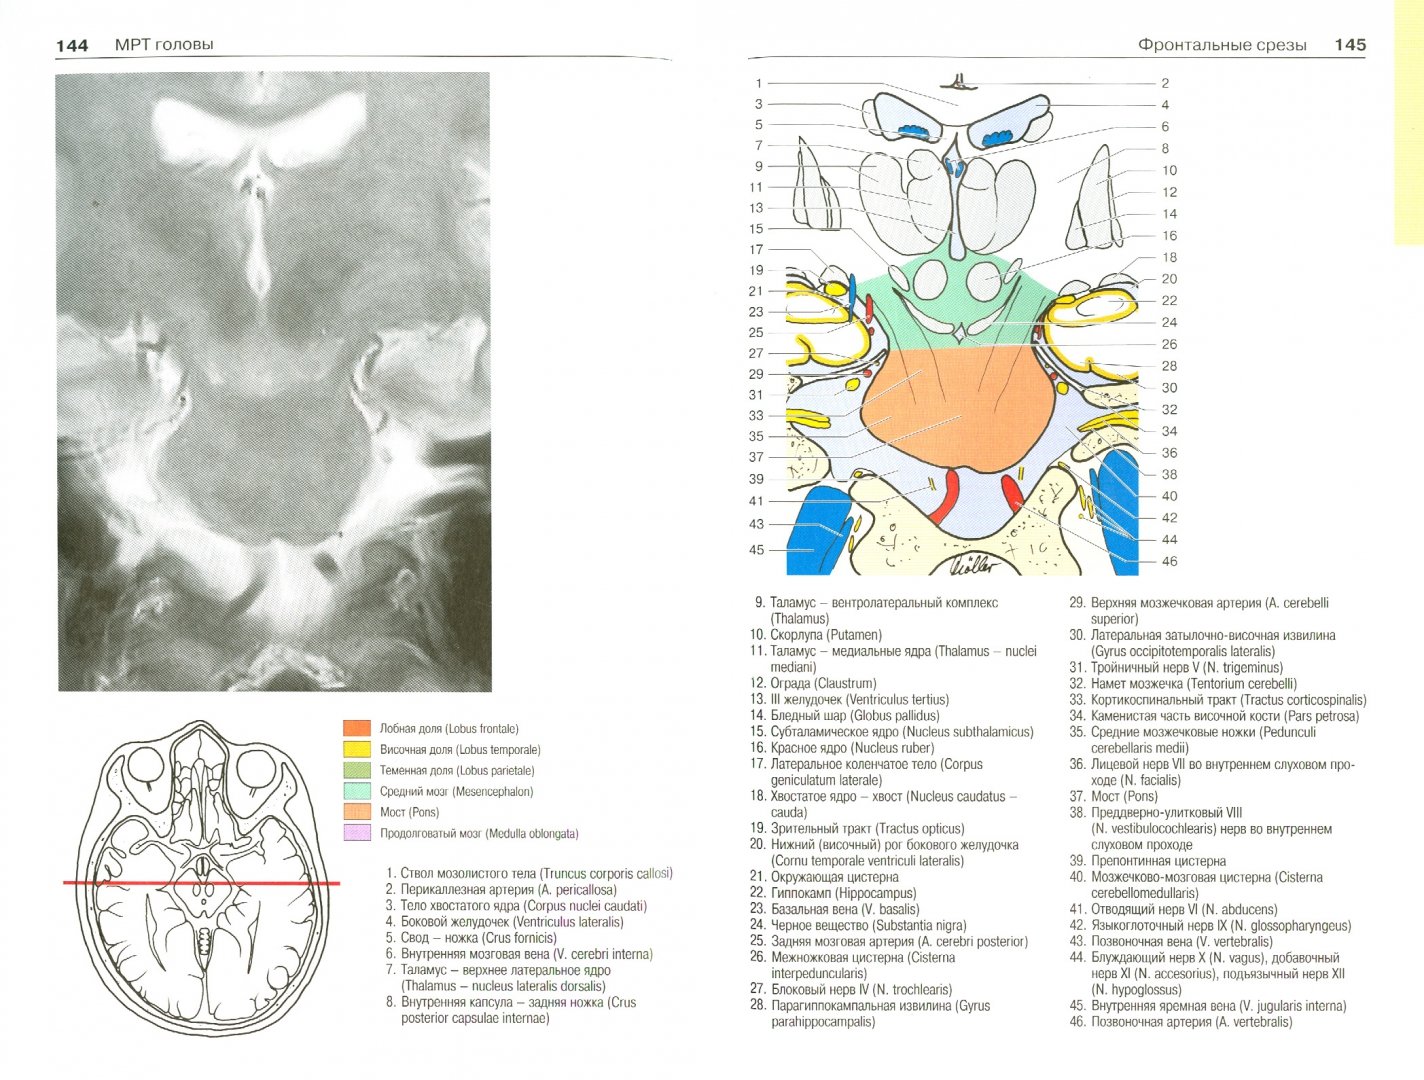 Иллюстрация 1 из 6 для Атлас секционной анатомии человека на примере КТ- и МРТ-срезов. Том 1. Голова и шея - Меллер, Райф | Лабиринт - книги. Источник: Лабиринт